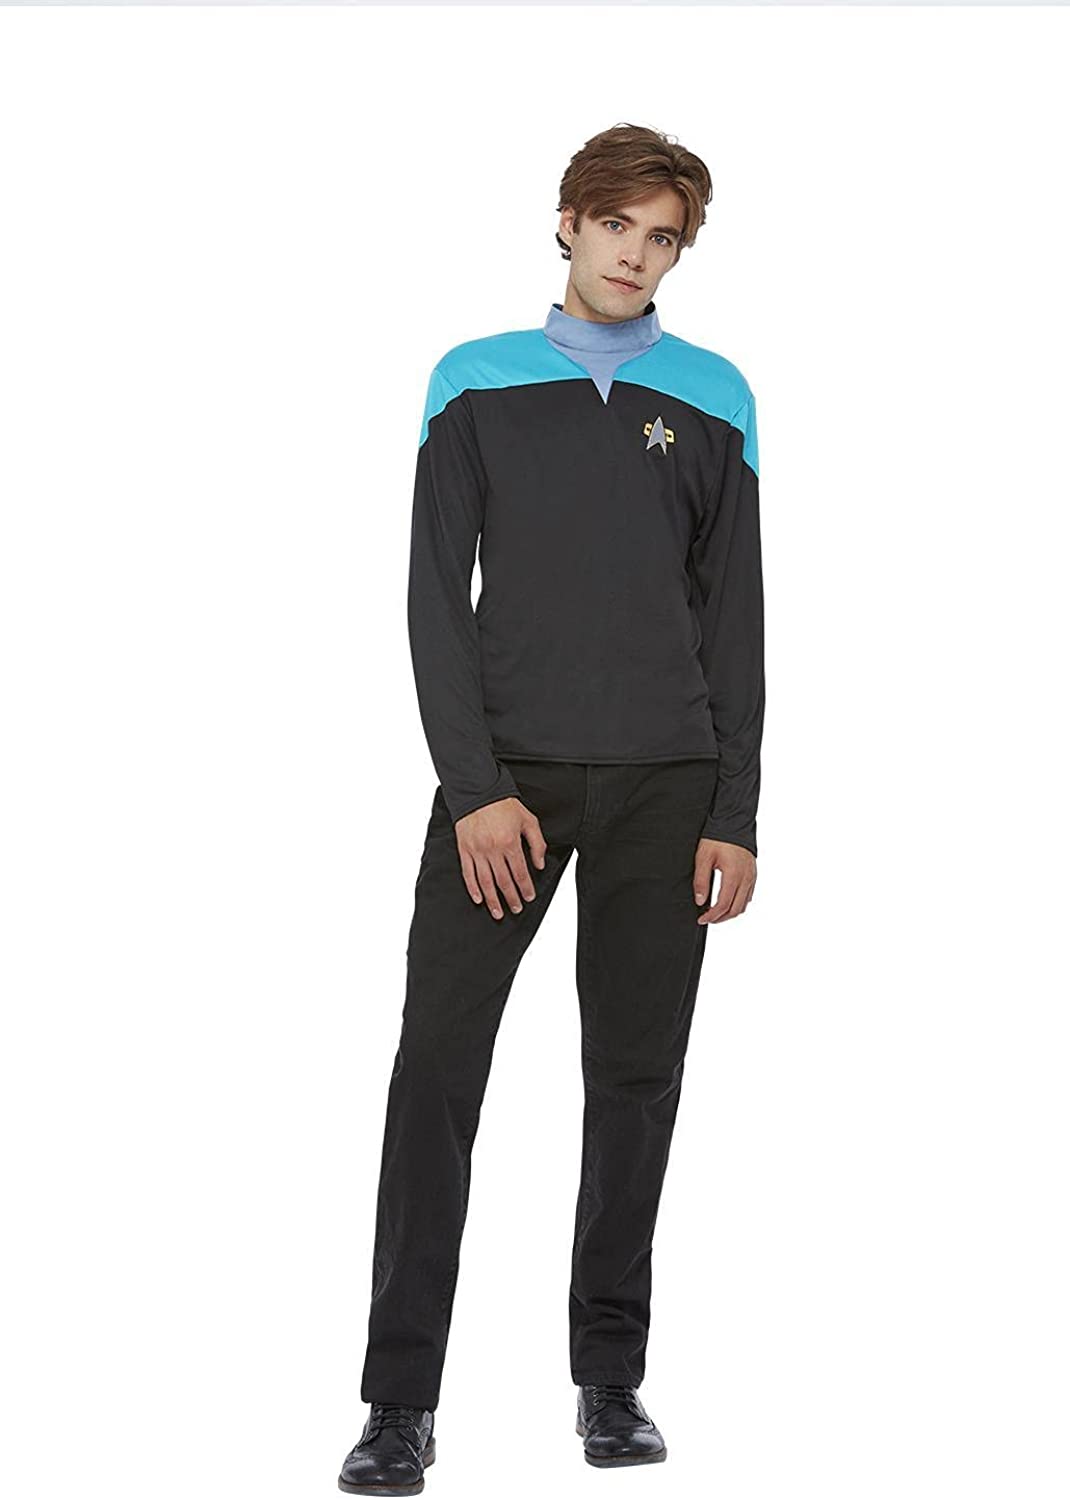 Smiffys offiziell lizenzierte Star Trek Voyager Wissenschaftsuniform